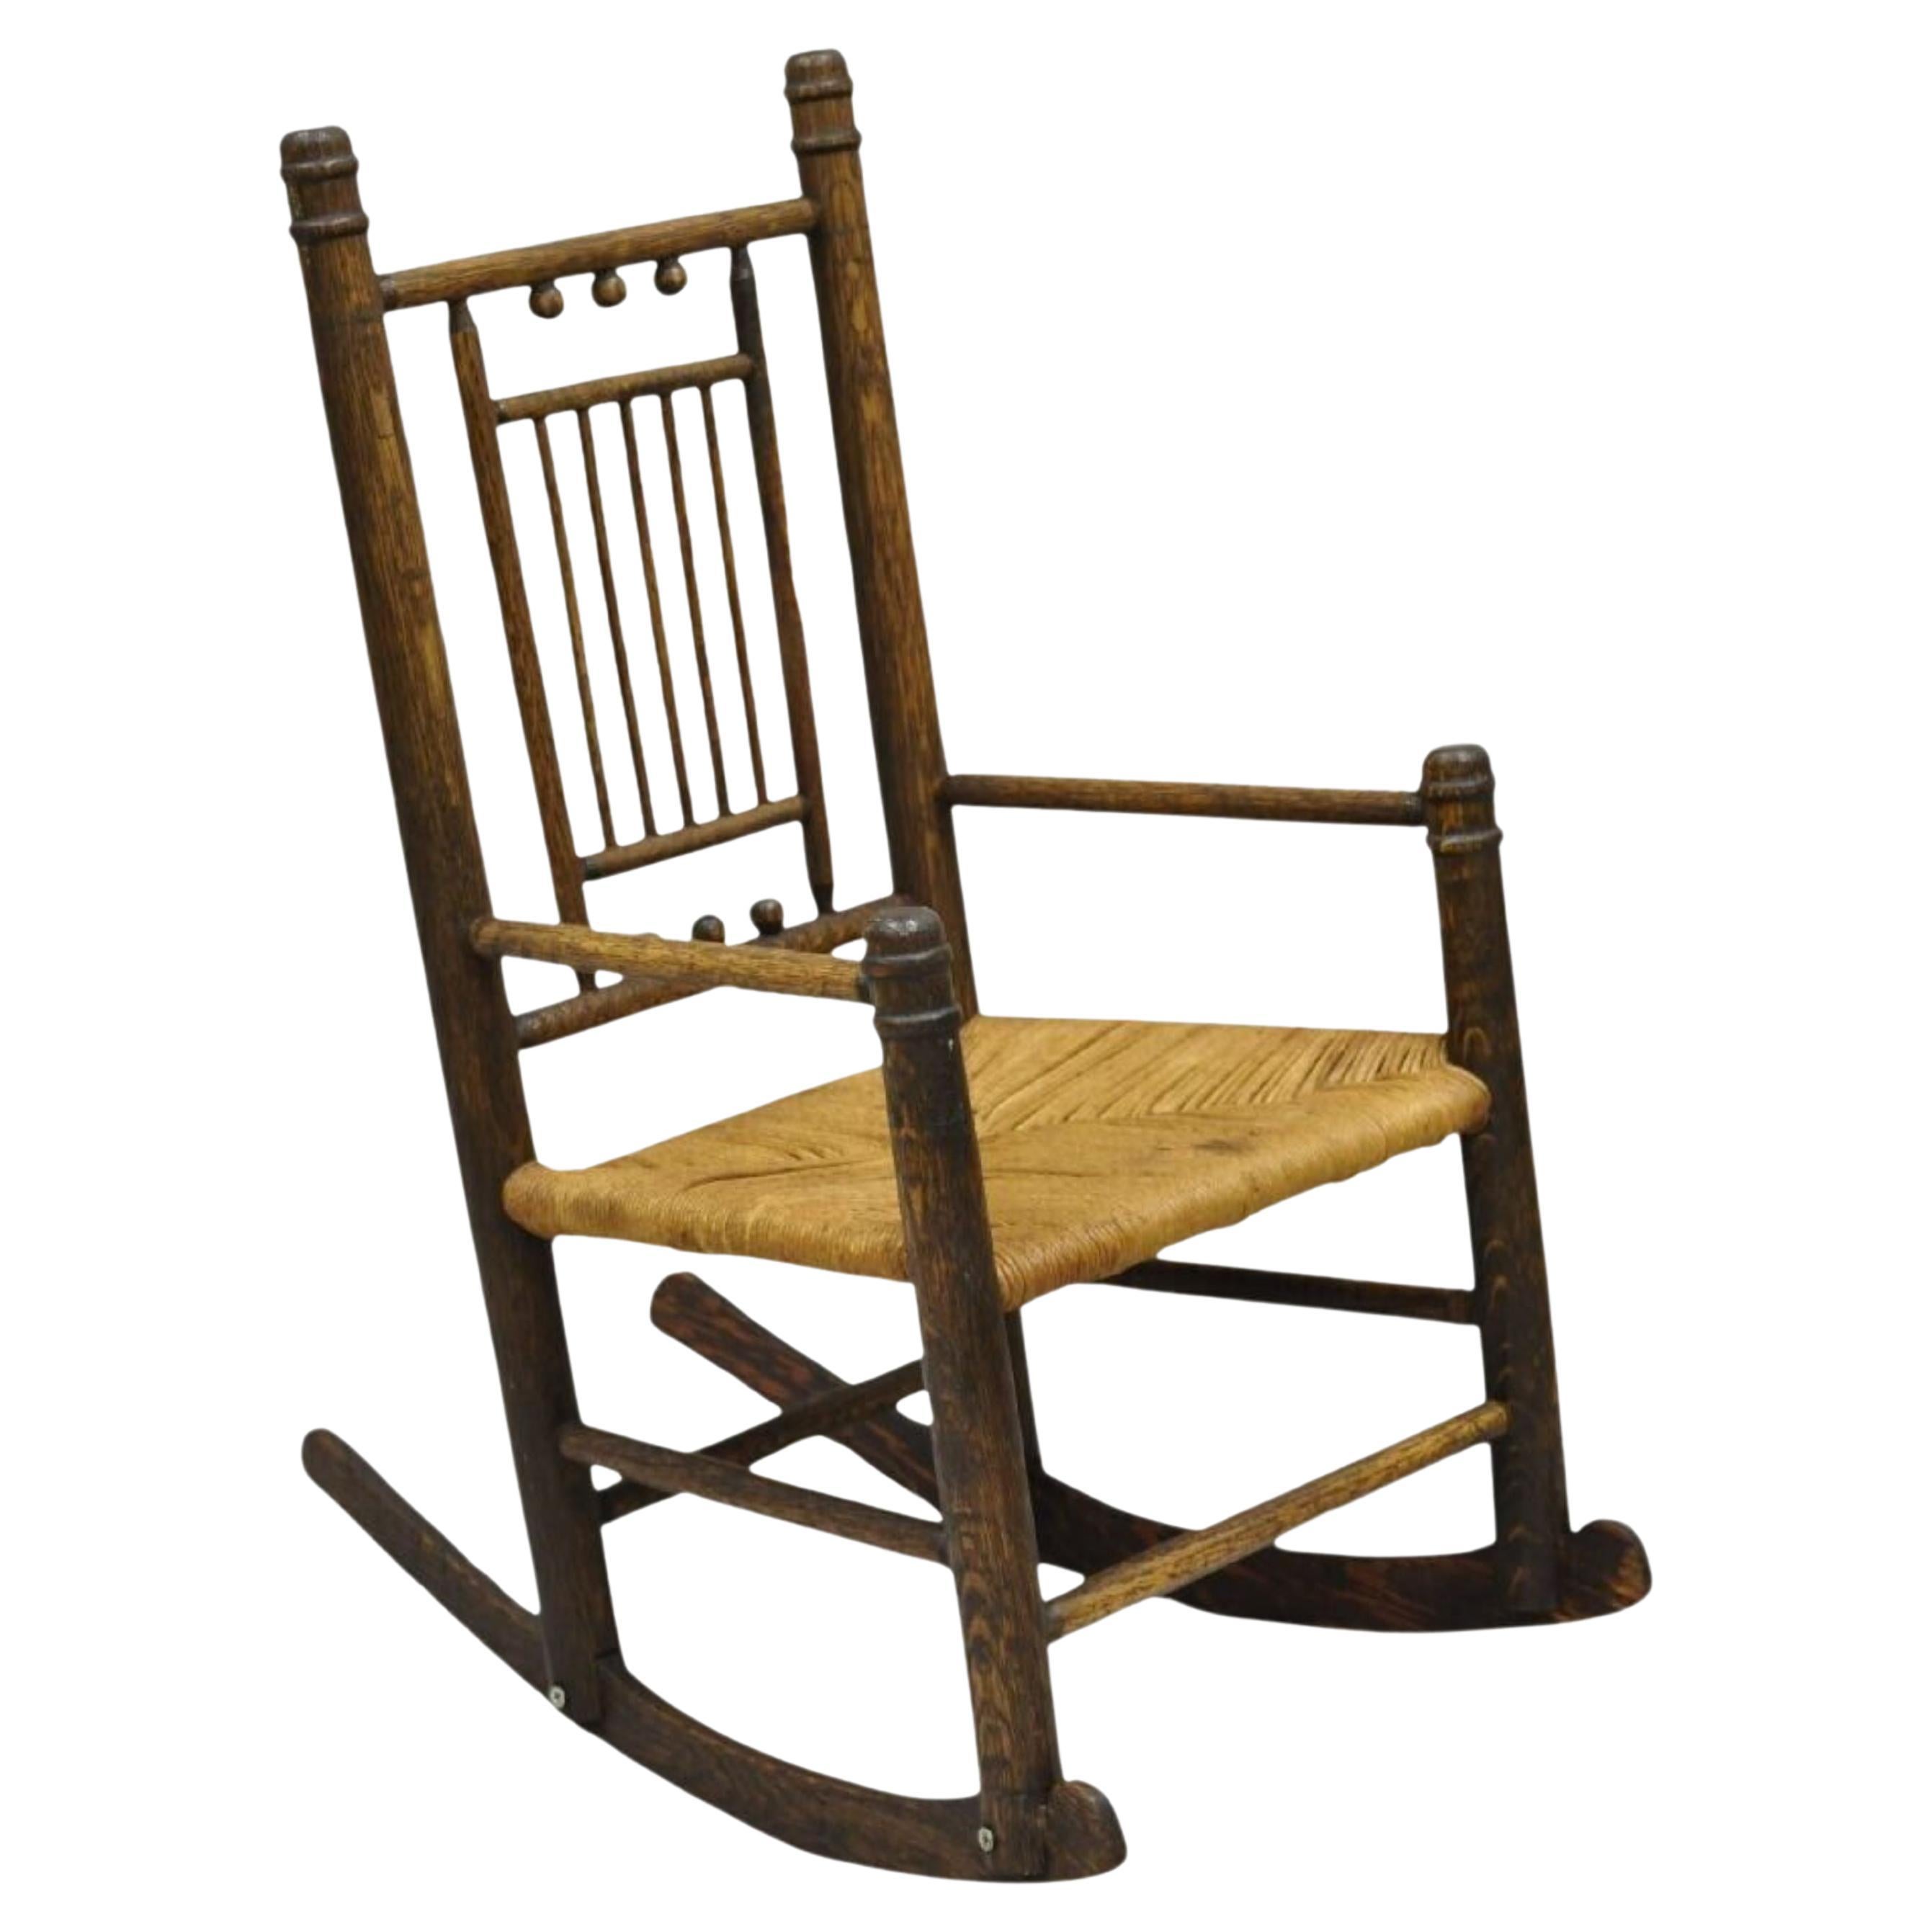 Ancienne chaise à bascule d'enfant victorienne Arts & Crafts en chêne avec siège en jonc